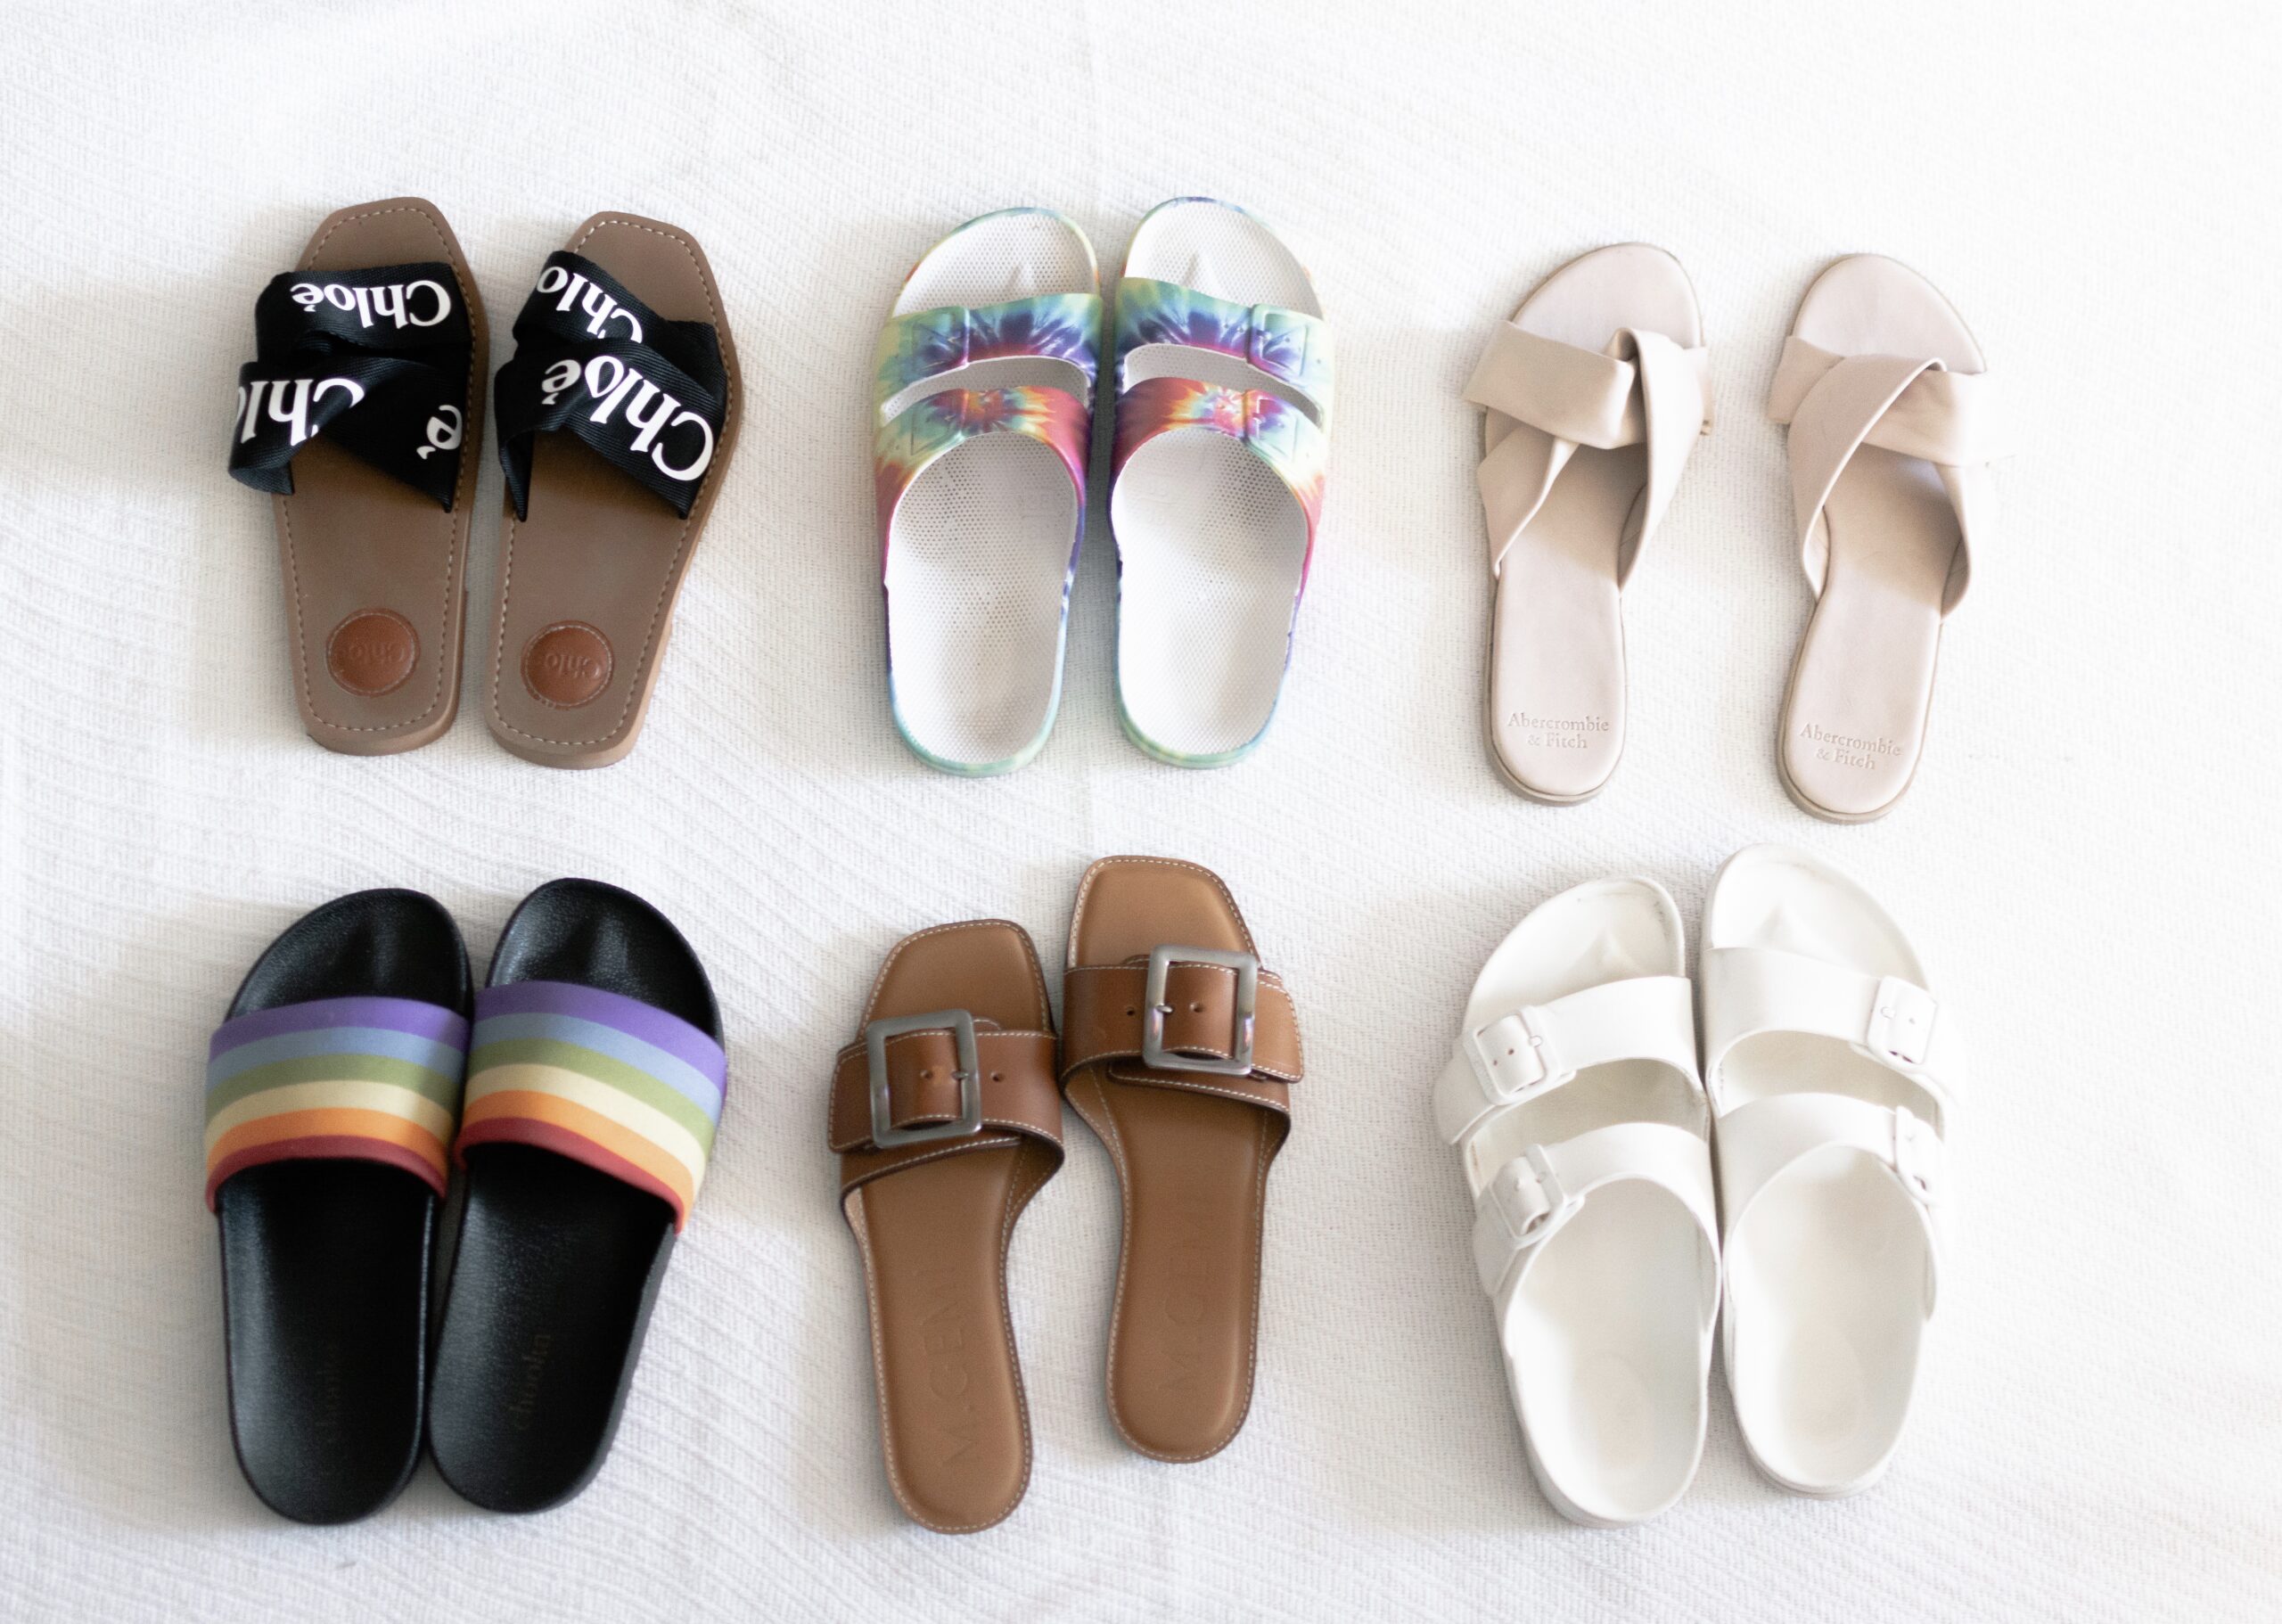 Chloé woody sandals, Summer Slide Sandals, Summer Slide Sandals, Birkenstock Sandals, KatWalkSF, CHloe Woody Sandals, Tie-Dye Slides, Summer Sandals, Kat Ensign